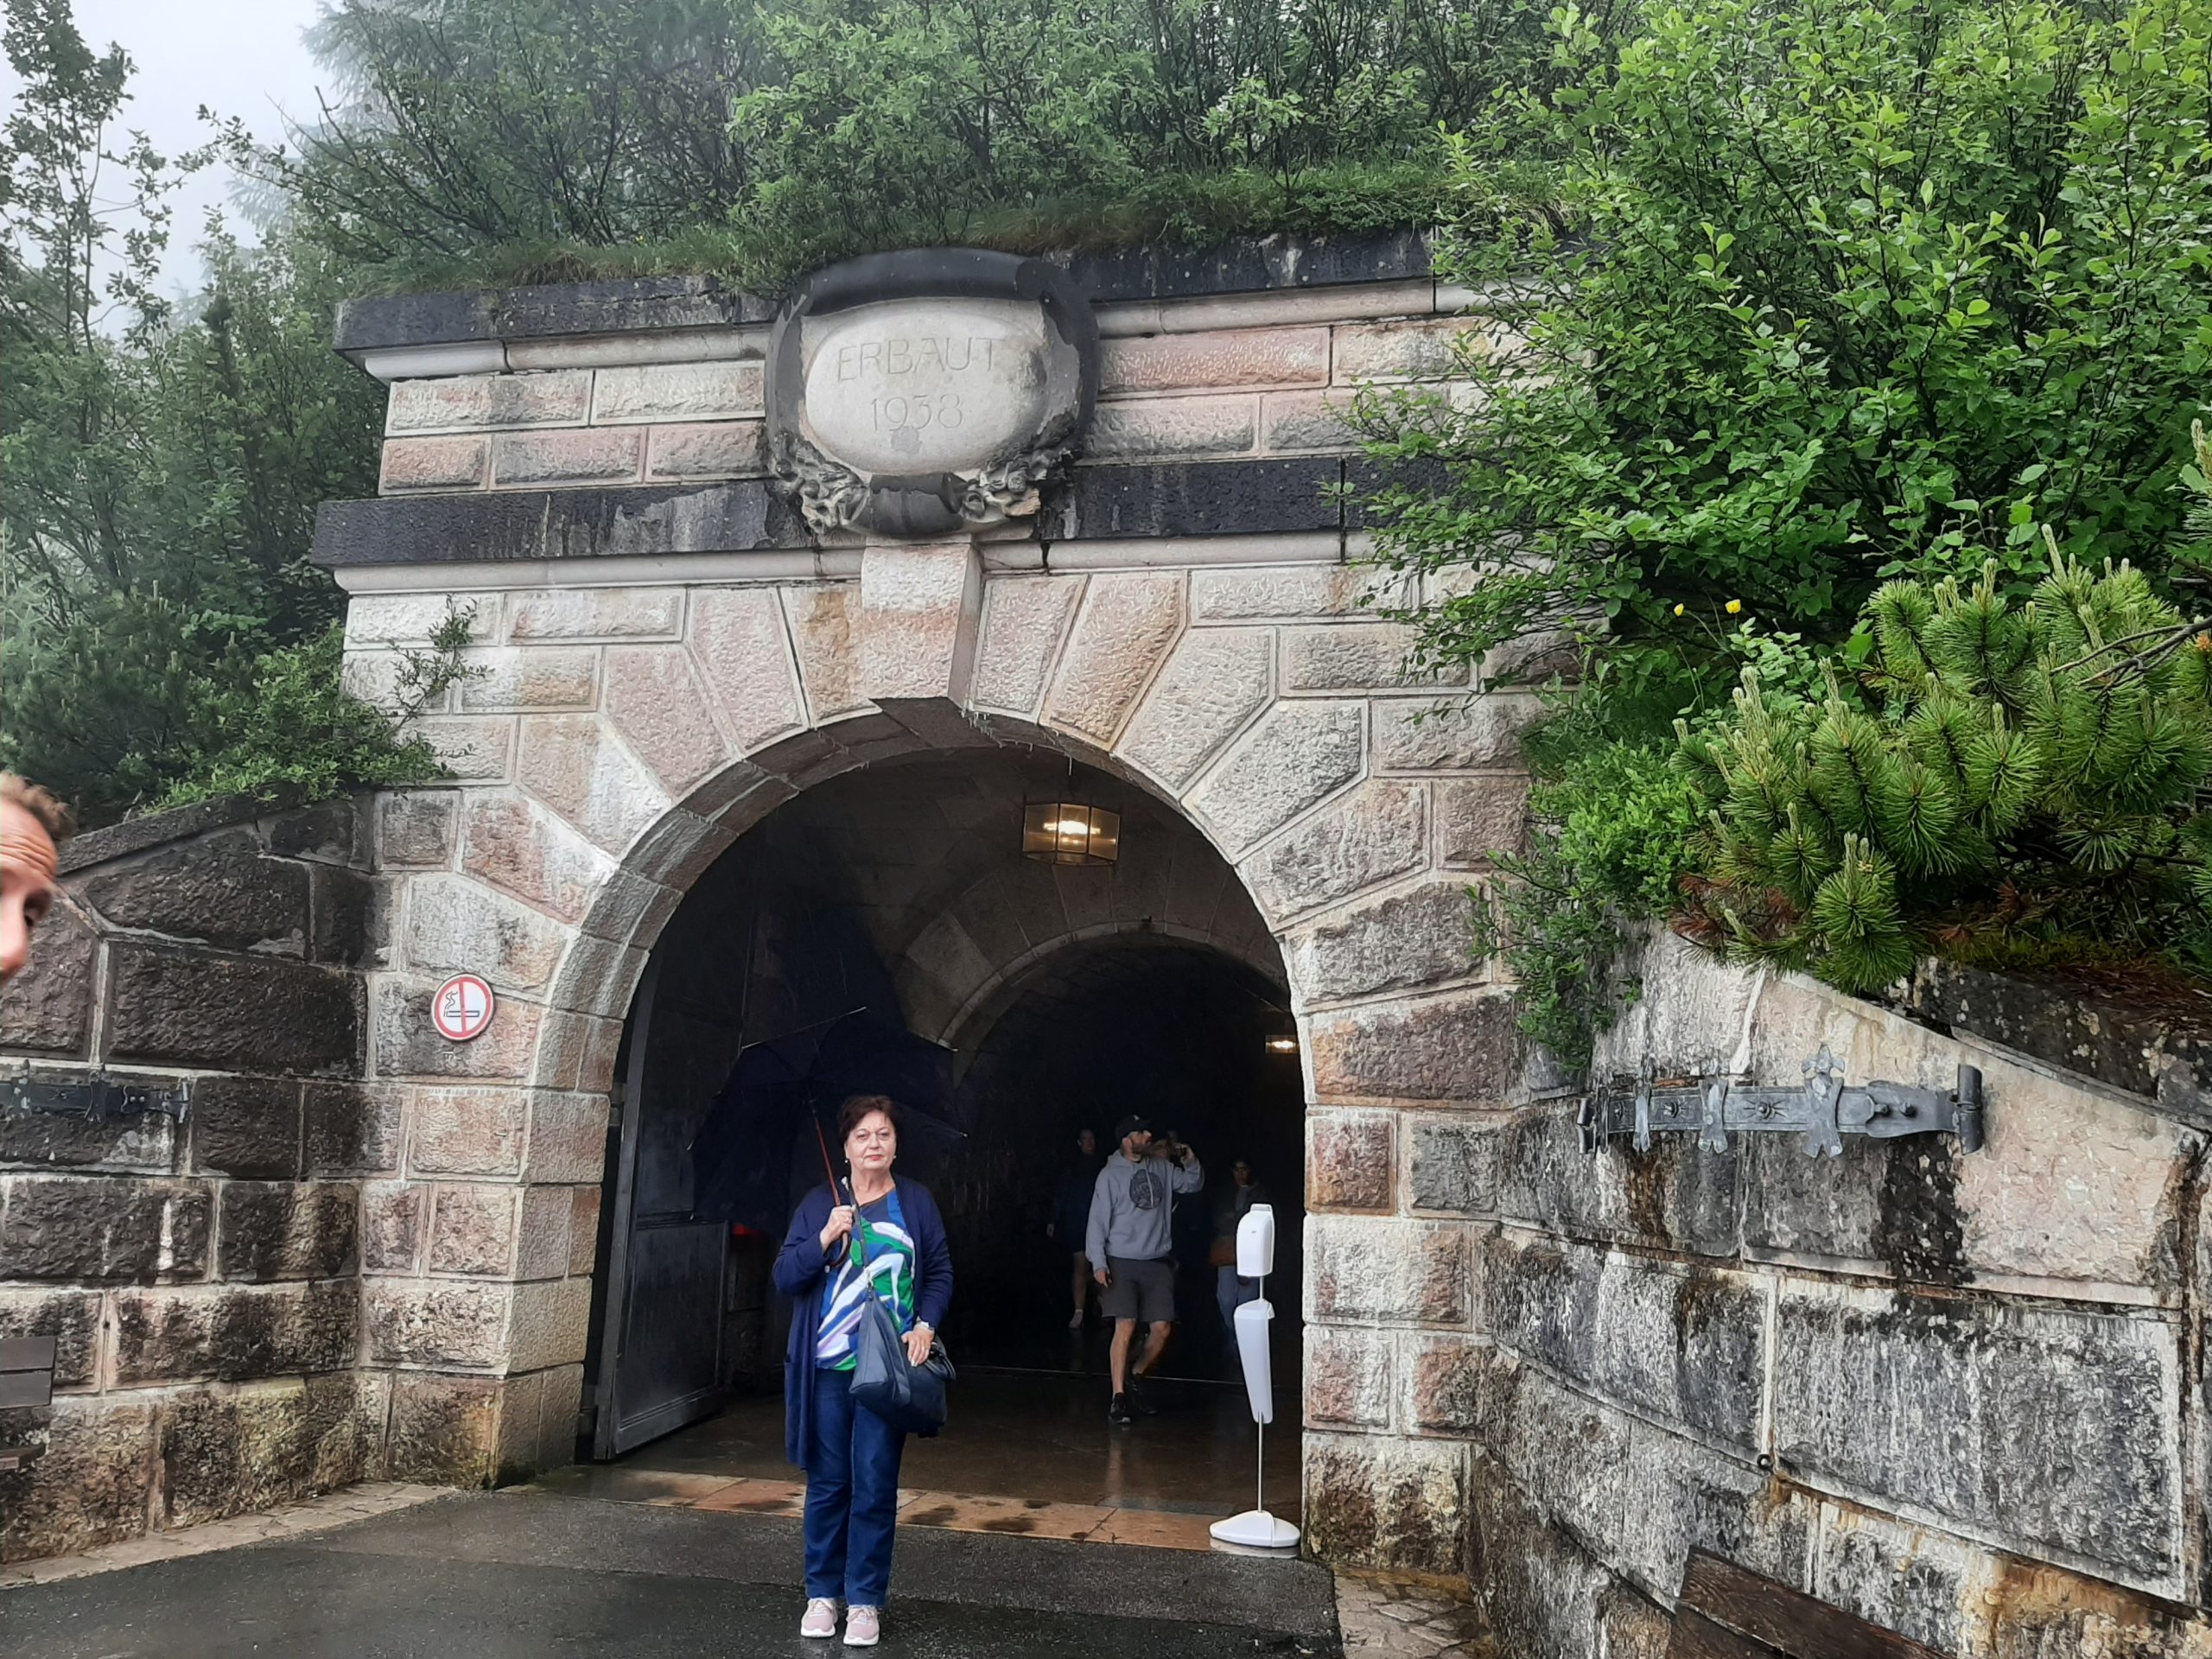 Ulaz u tunel sagrađen 1938. godine i ja ispred - za uspomenu!